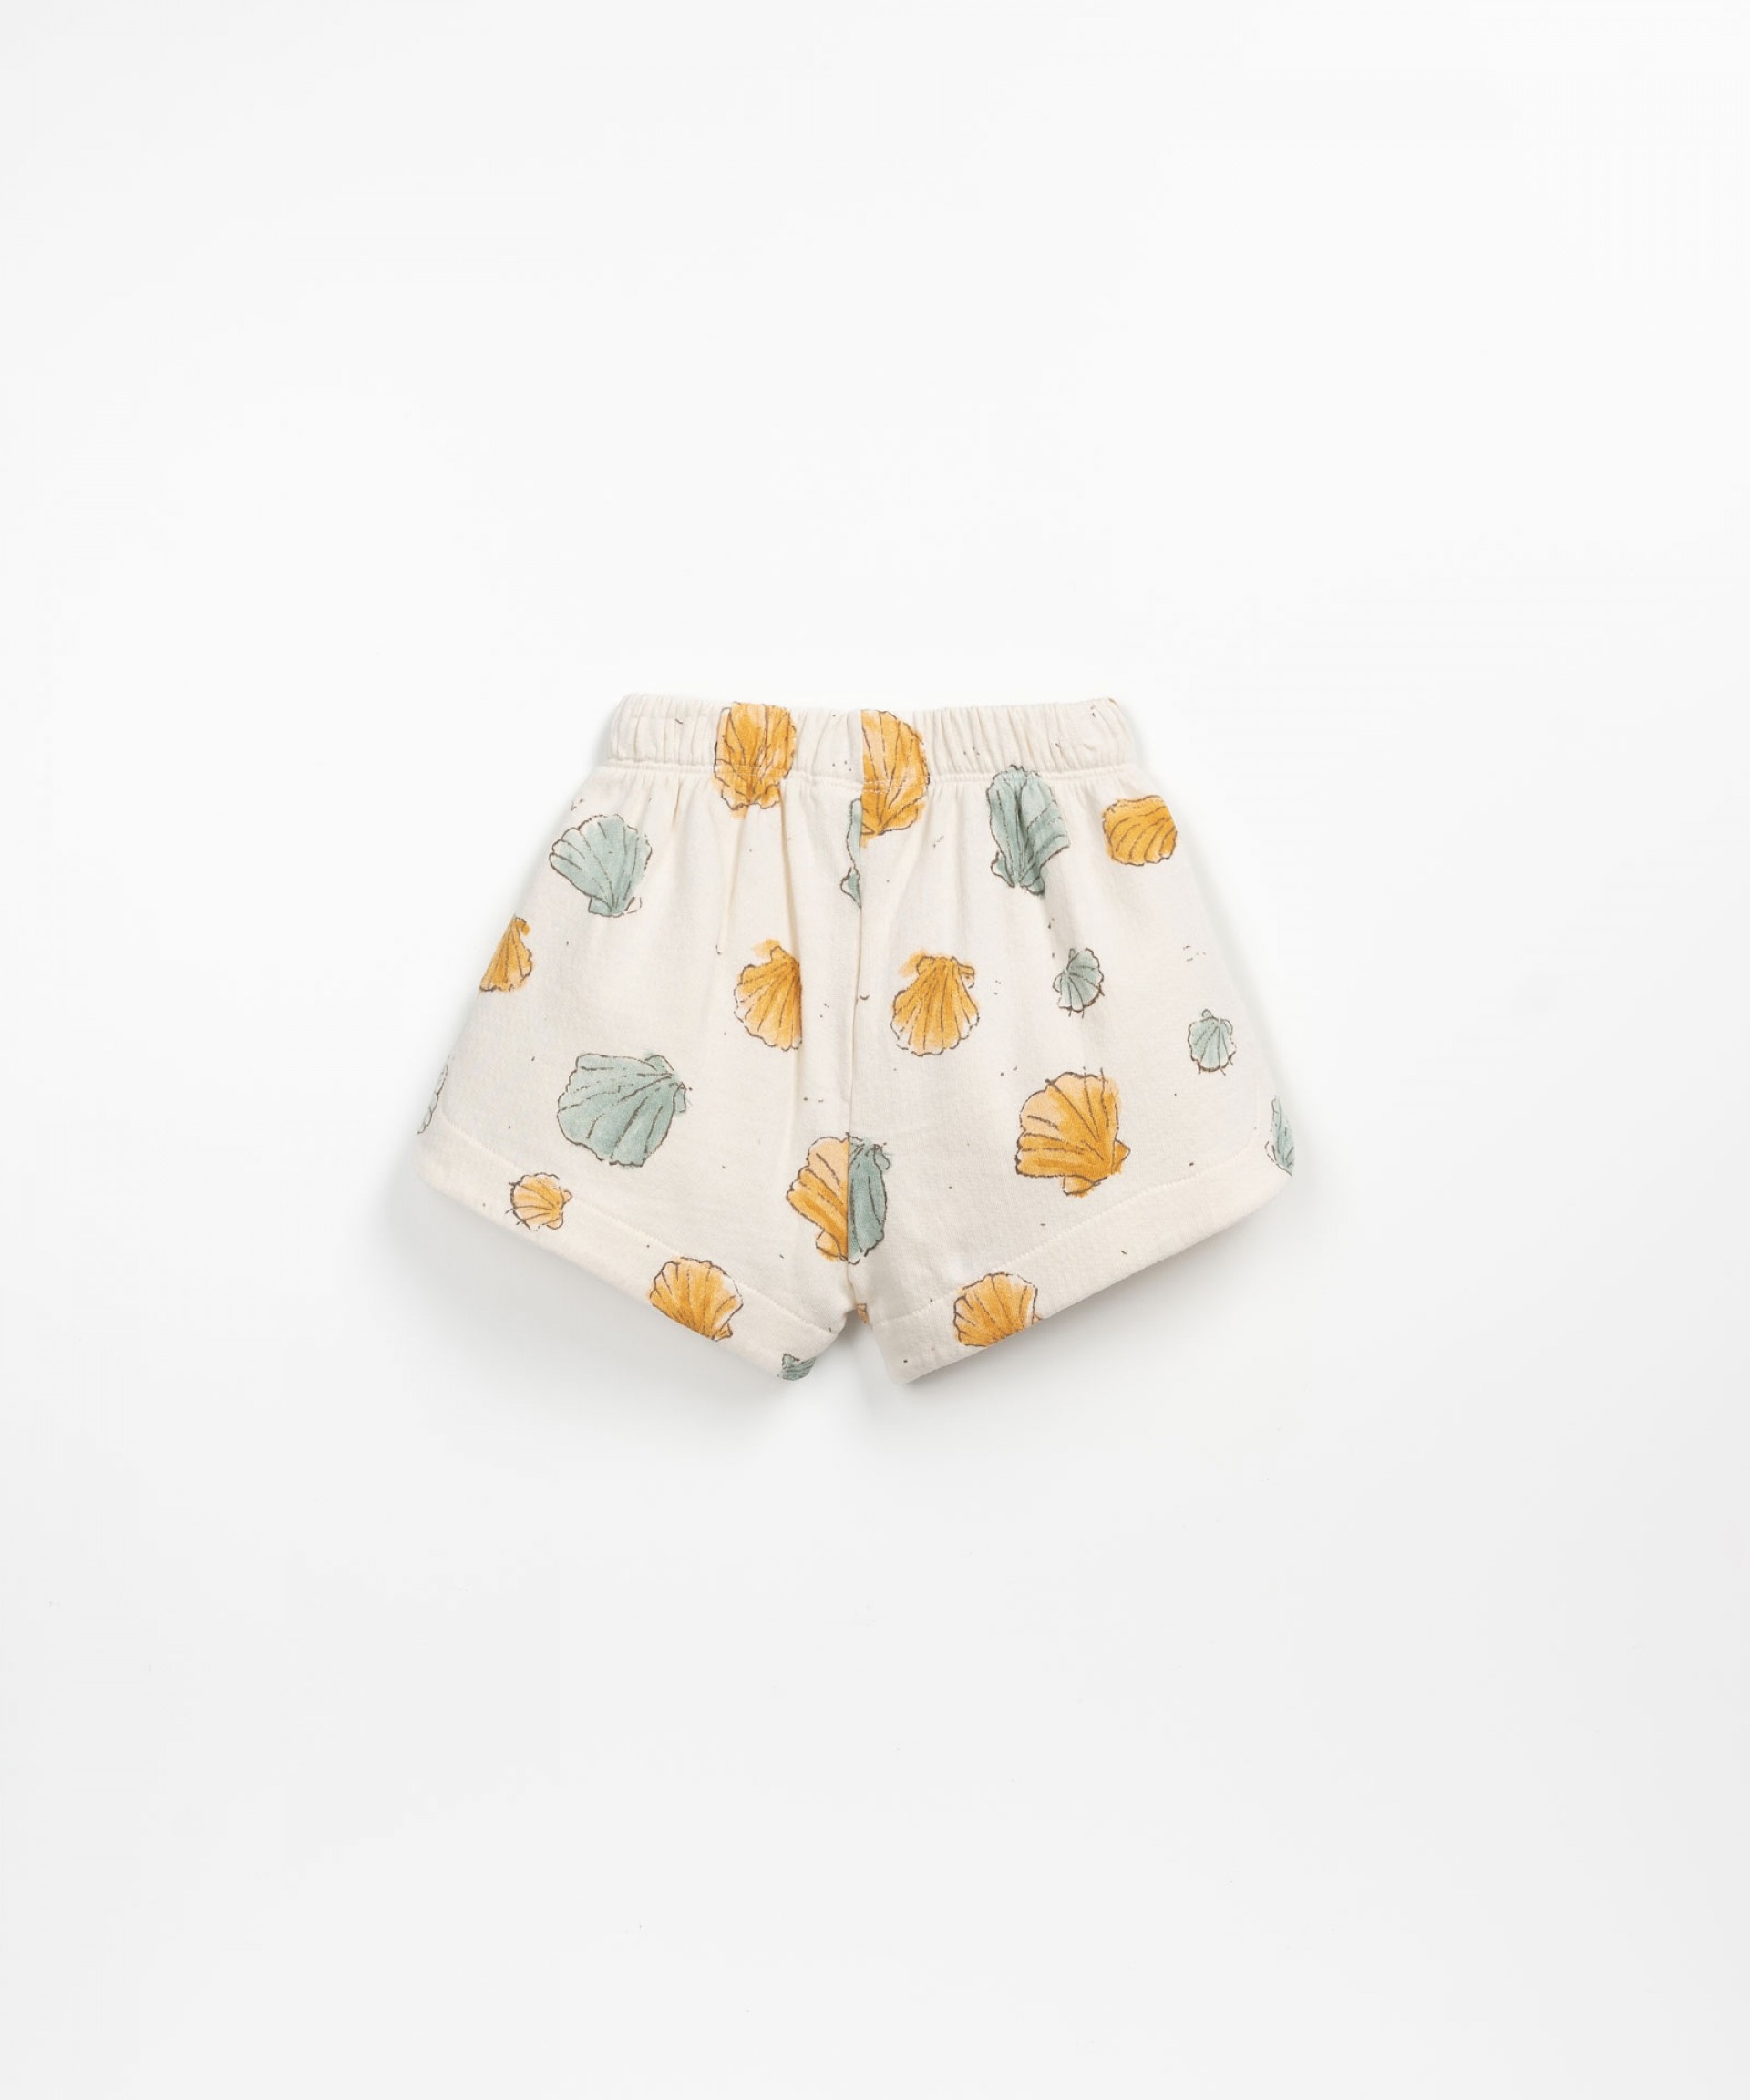 Pantaloncini con cordino decorativo | Textile Art